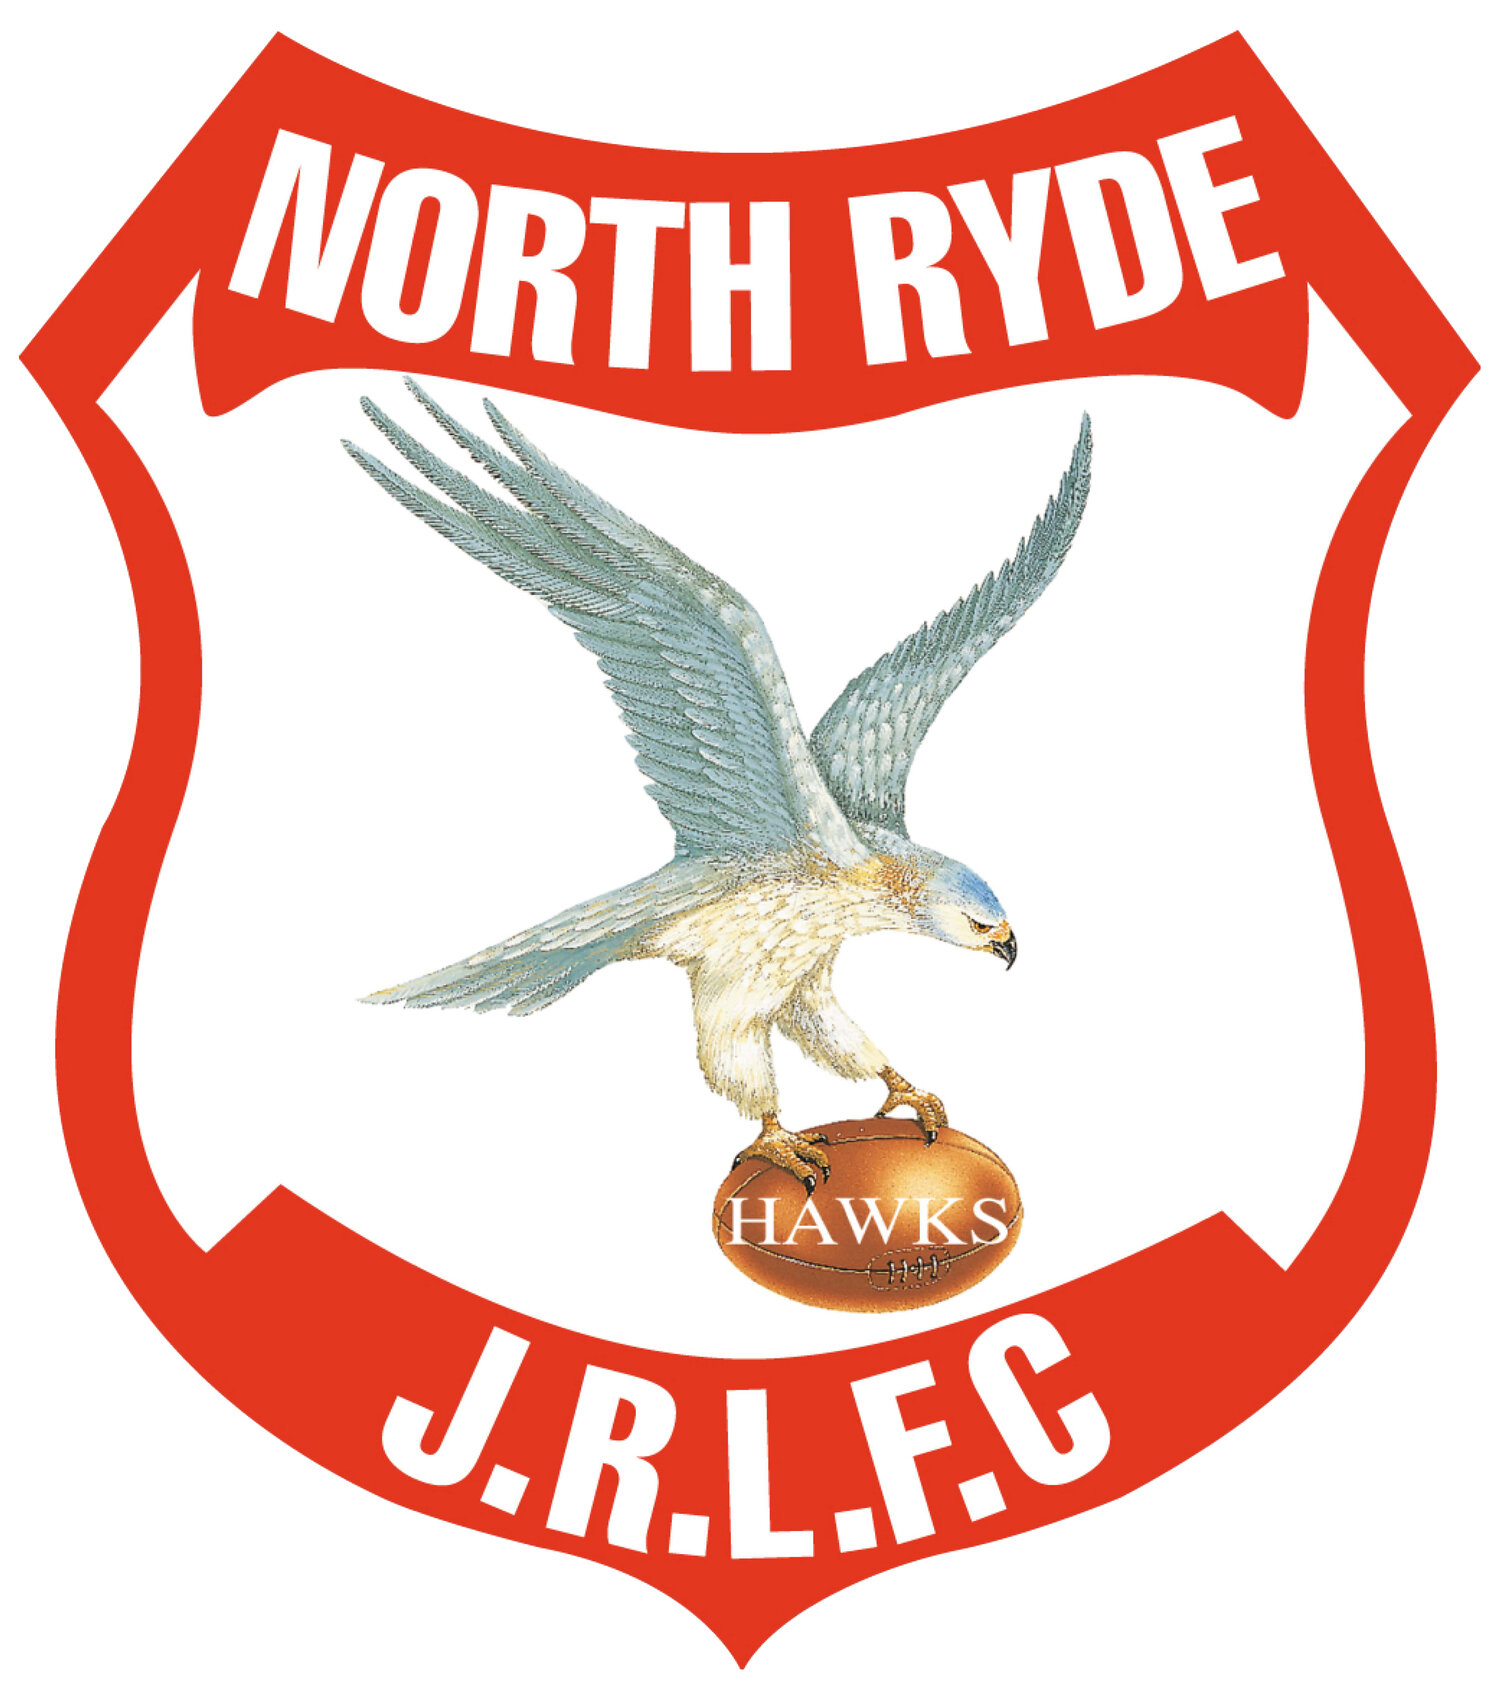 North Ryde Hawks JRLFC